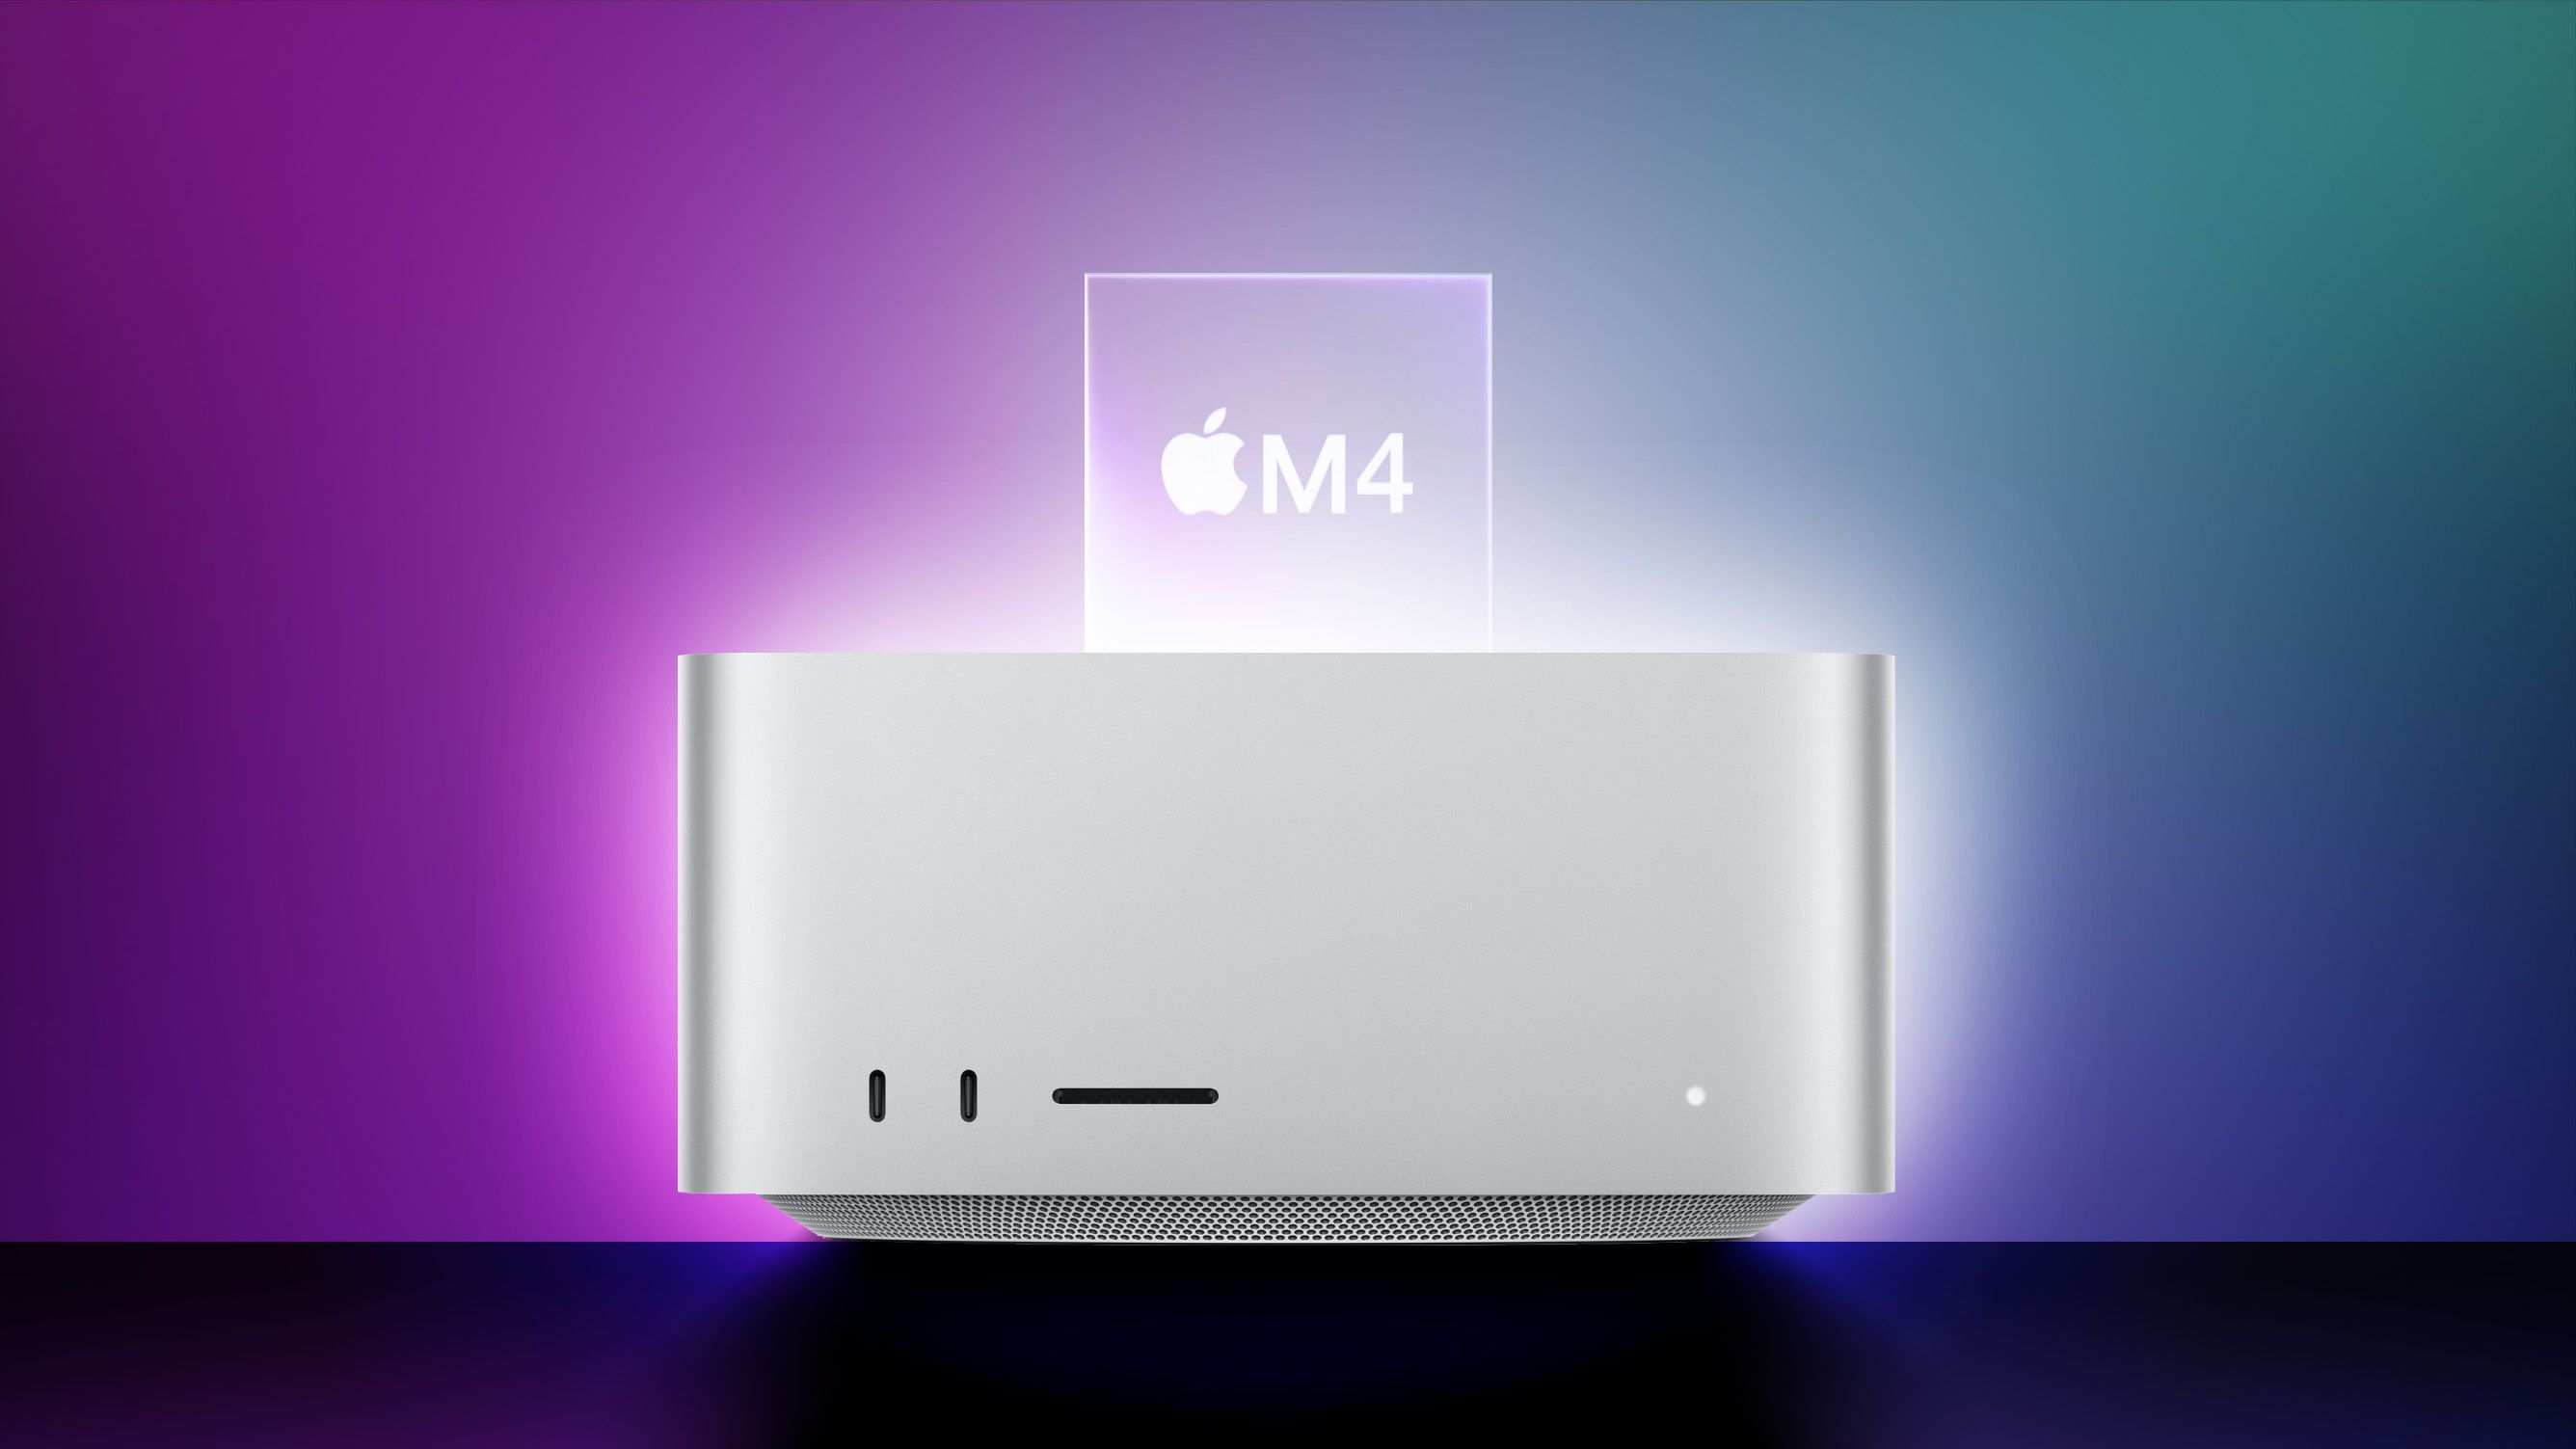 Apple M4 Mac Studio: Co zatím víme